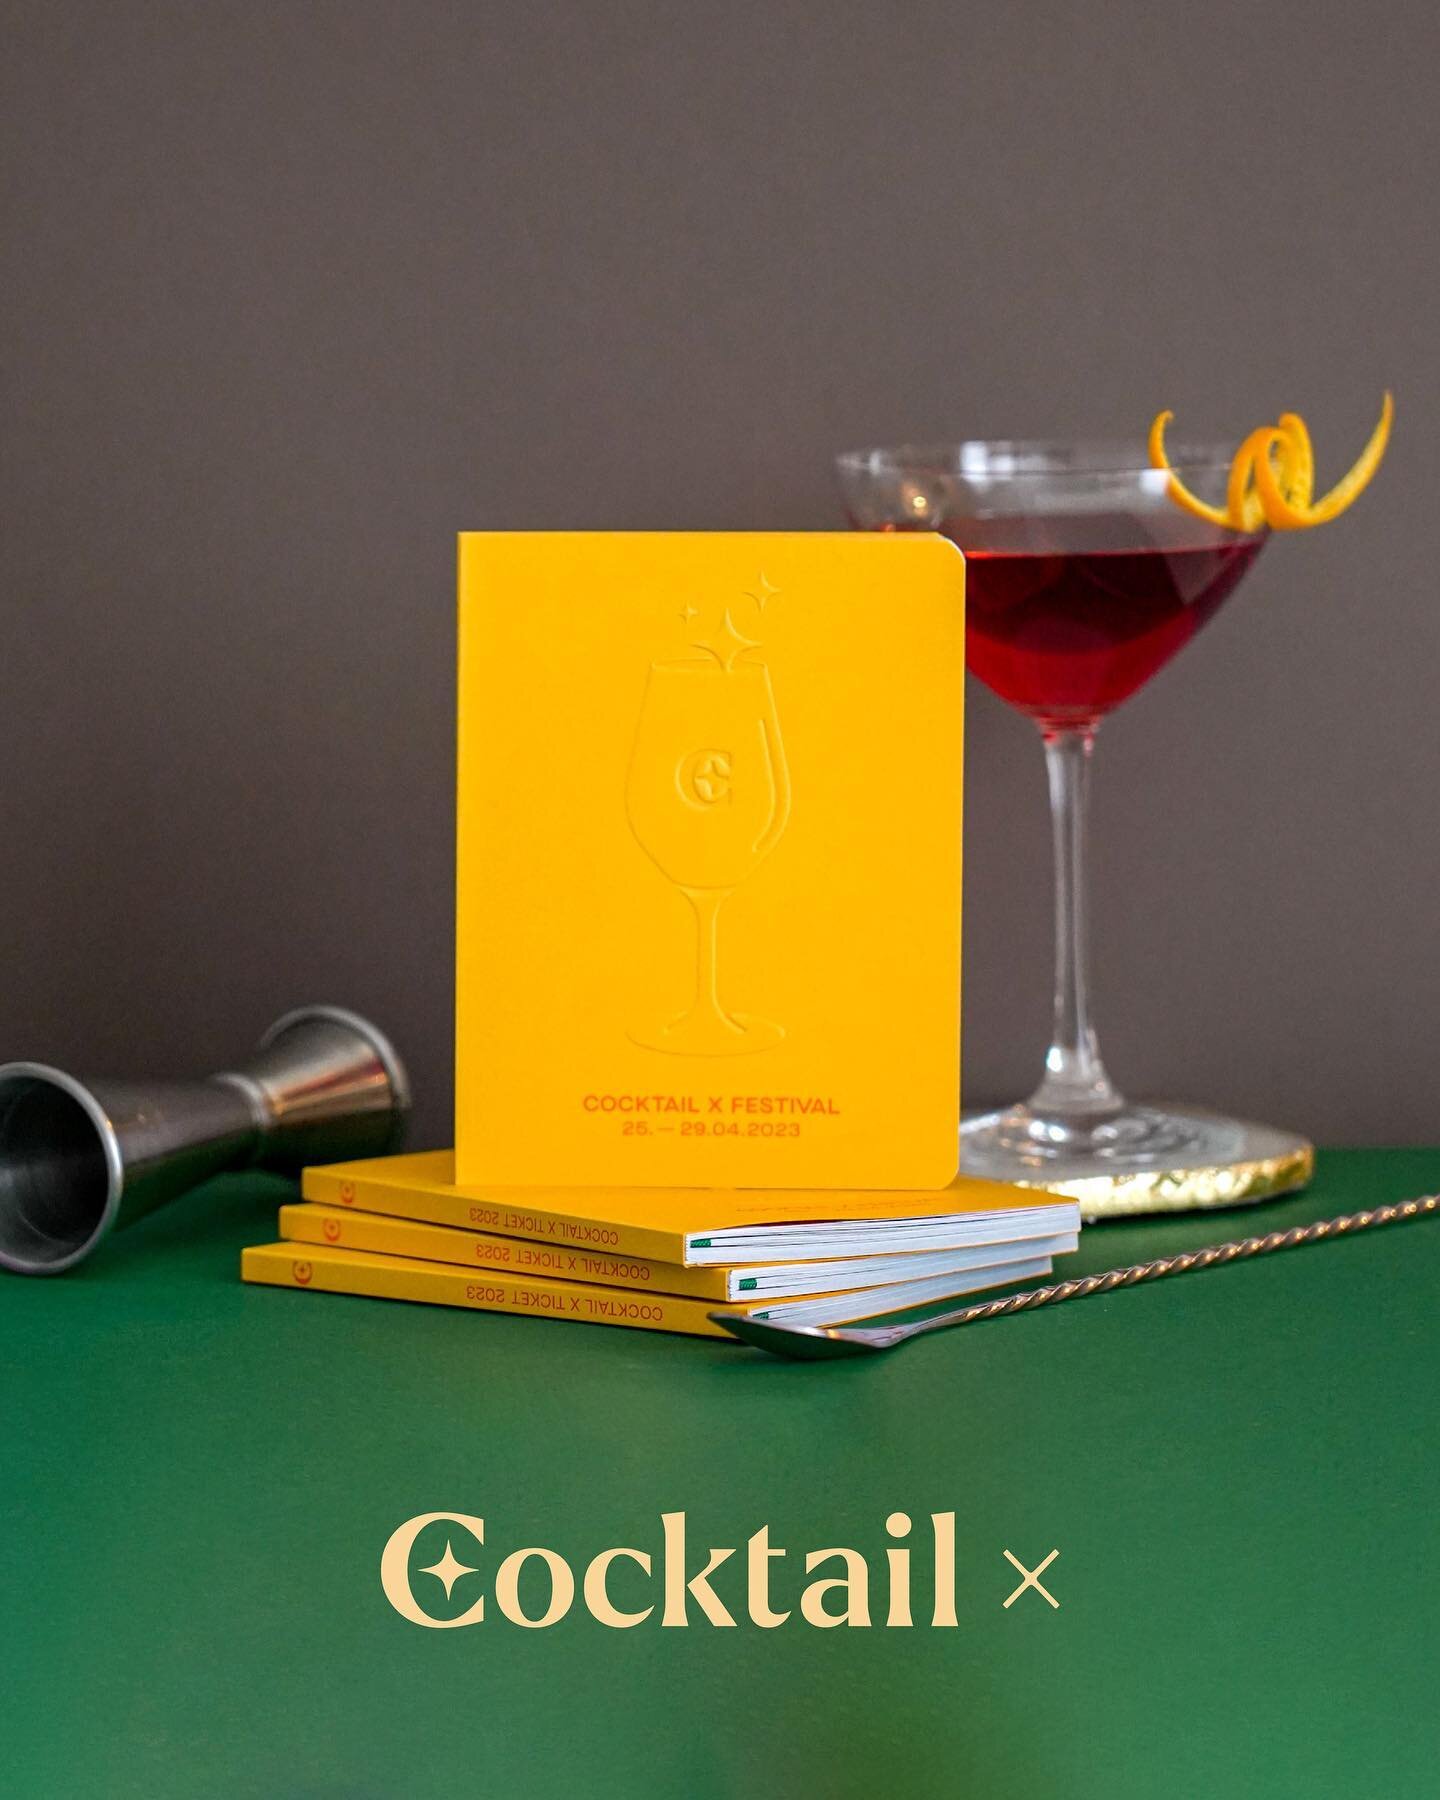 Sichert euch jetzt euer Ticket f&uuml;r Deutschlands gr&ouml;&szlig;tes Cocktailfestival! 🎫 🥃

📸 @dimi__de 

#cocktailx #cocktailxmuc #cocktailfestival #bartending